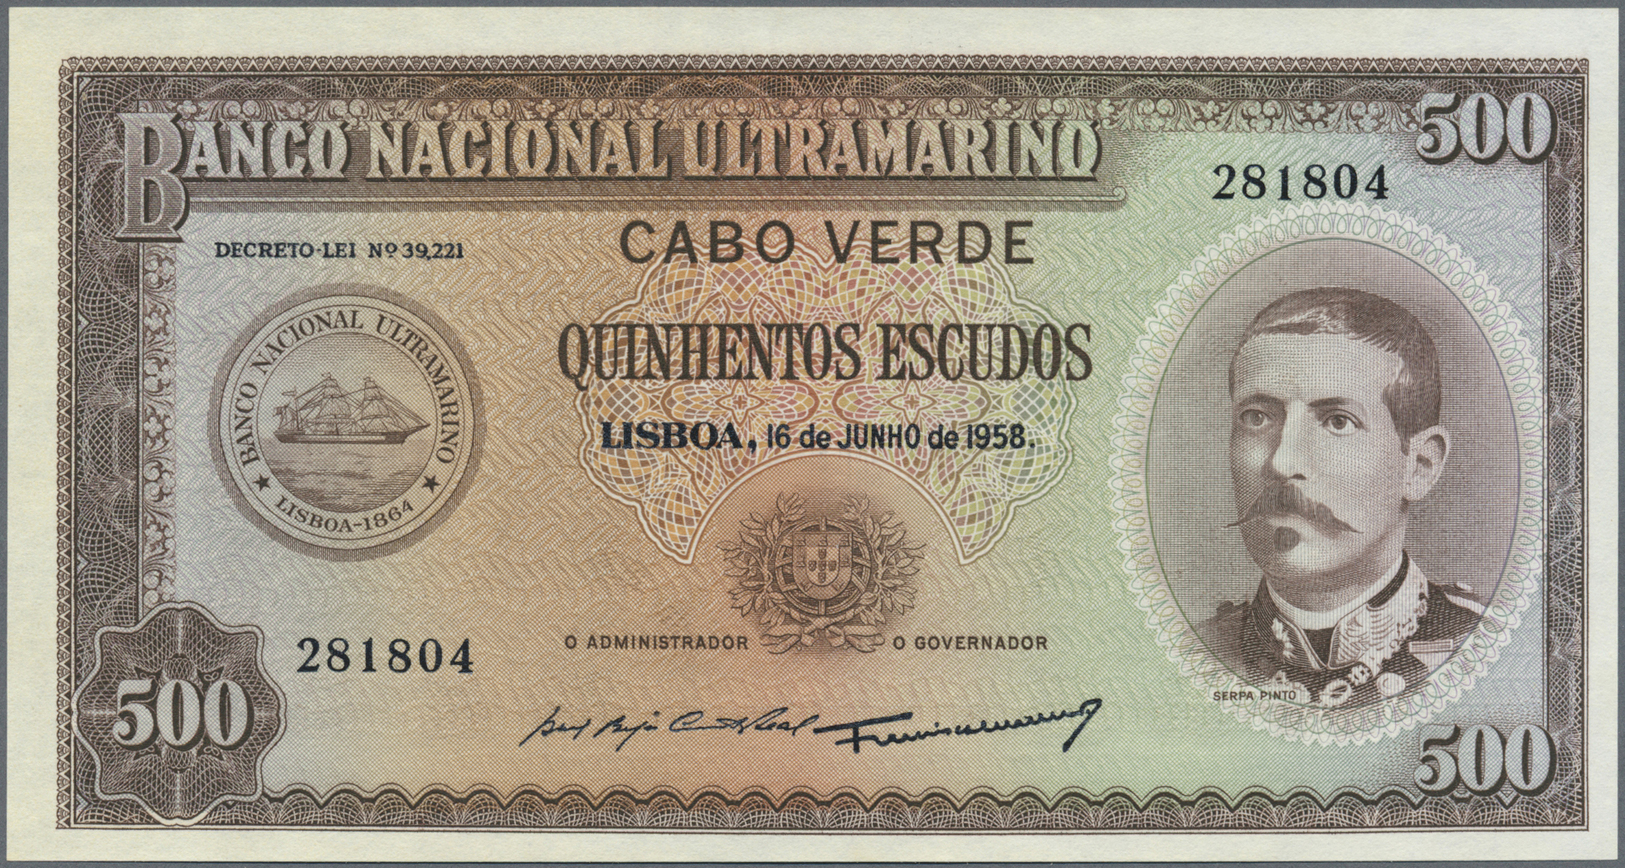 00499 Cape Verde / Kap Verde: 500 Escudos 1958 P. 50 In Condition: UNC. - Cape Verde